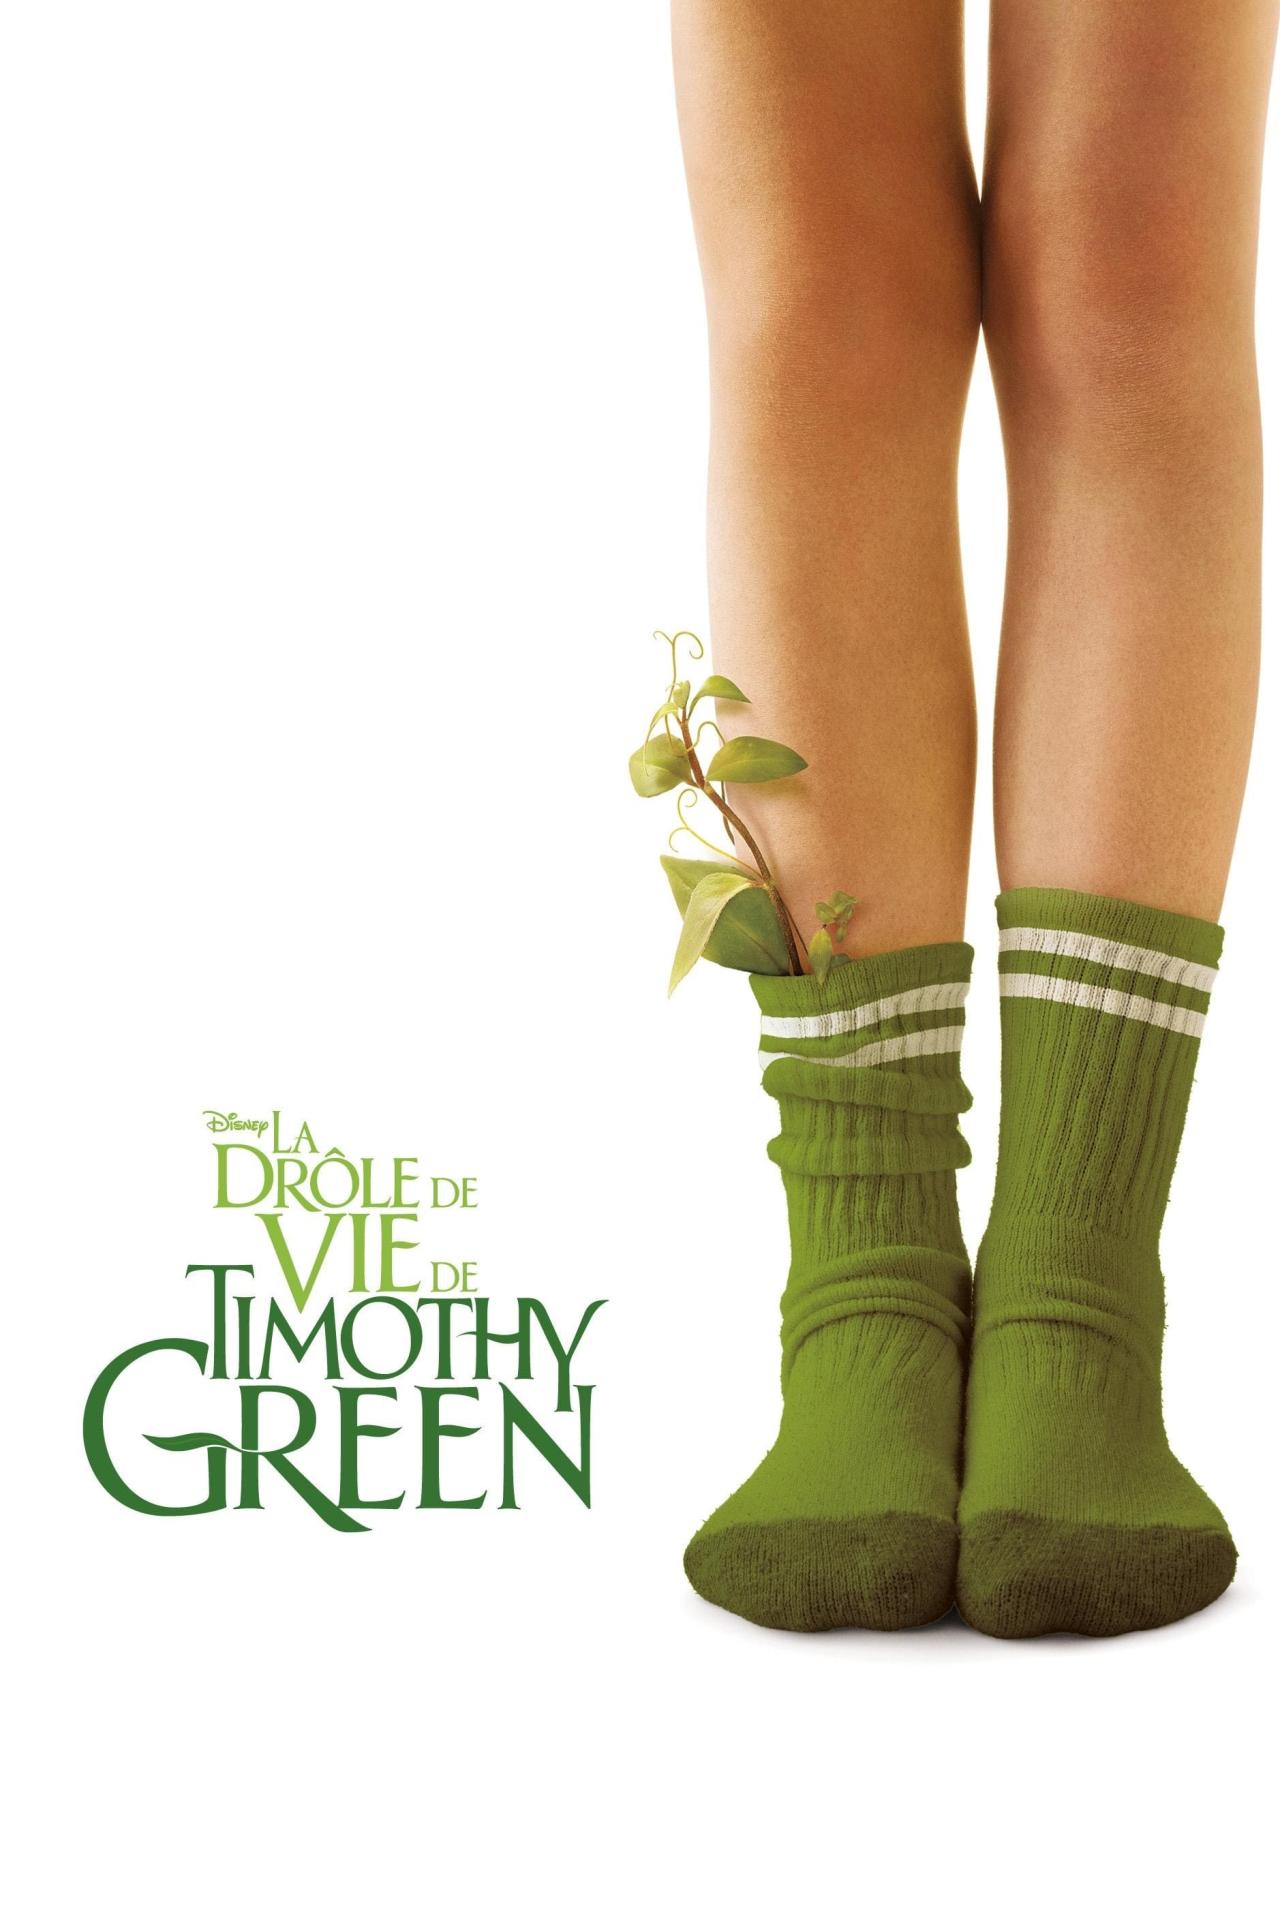 La drôle de vie de Timothy Green est-il disponible sur Netflix ou autre ?